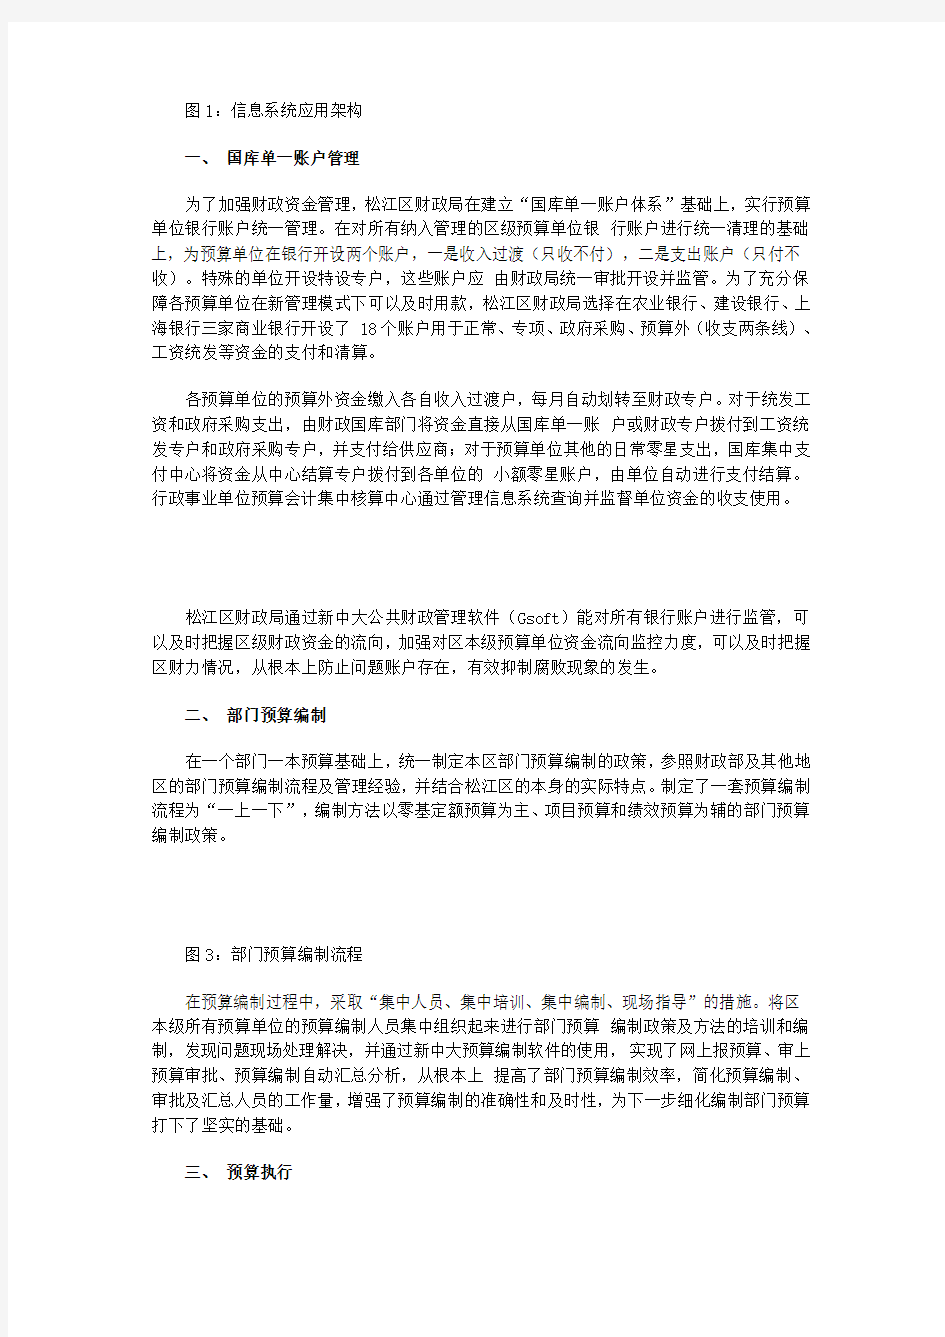 上海松江财政局构建信息应用系统平台案例